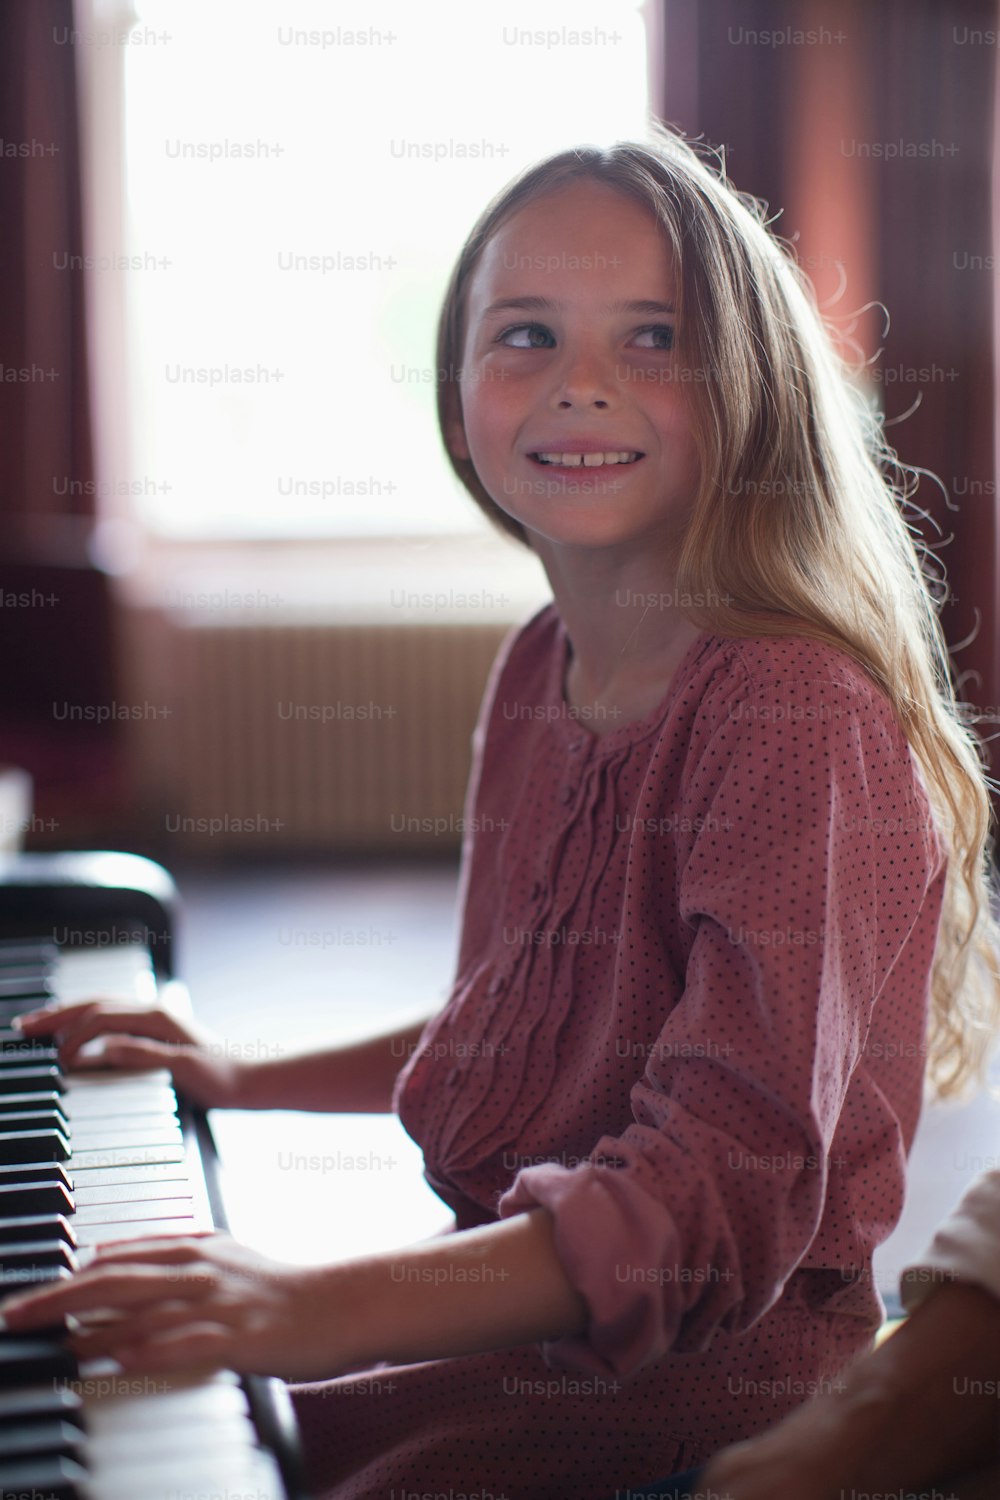 Une jeune fille assise au piano souriant